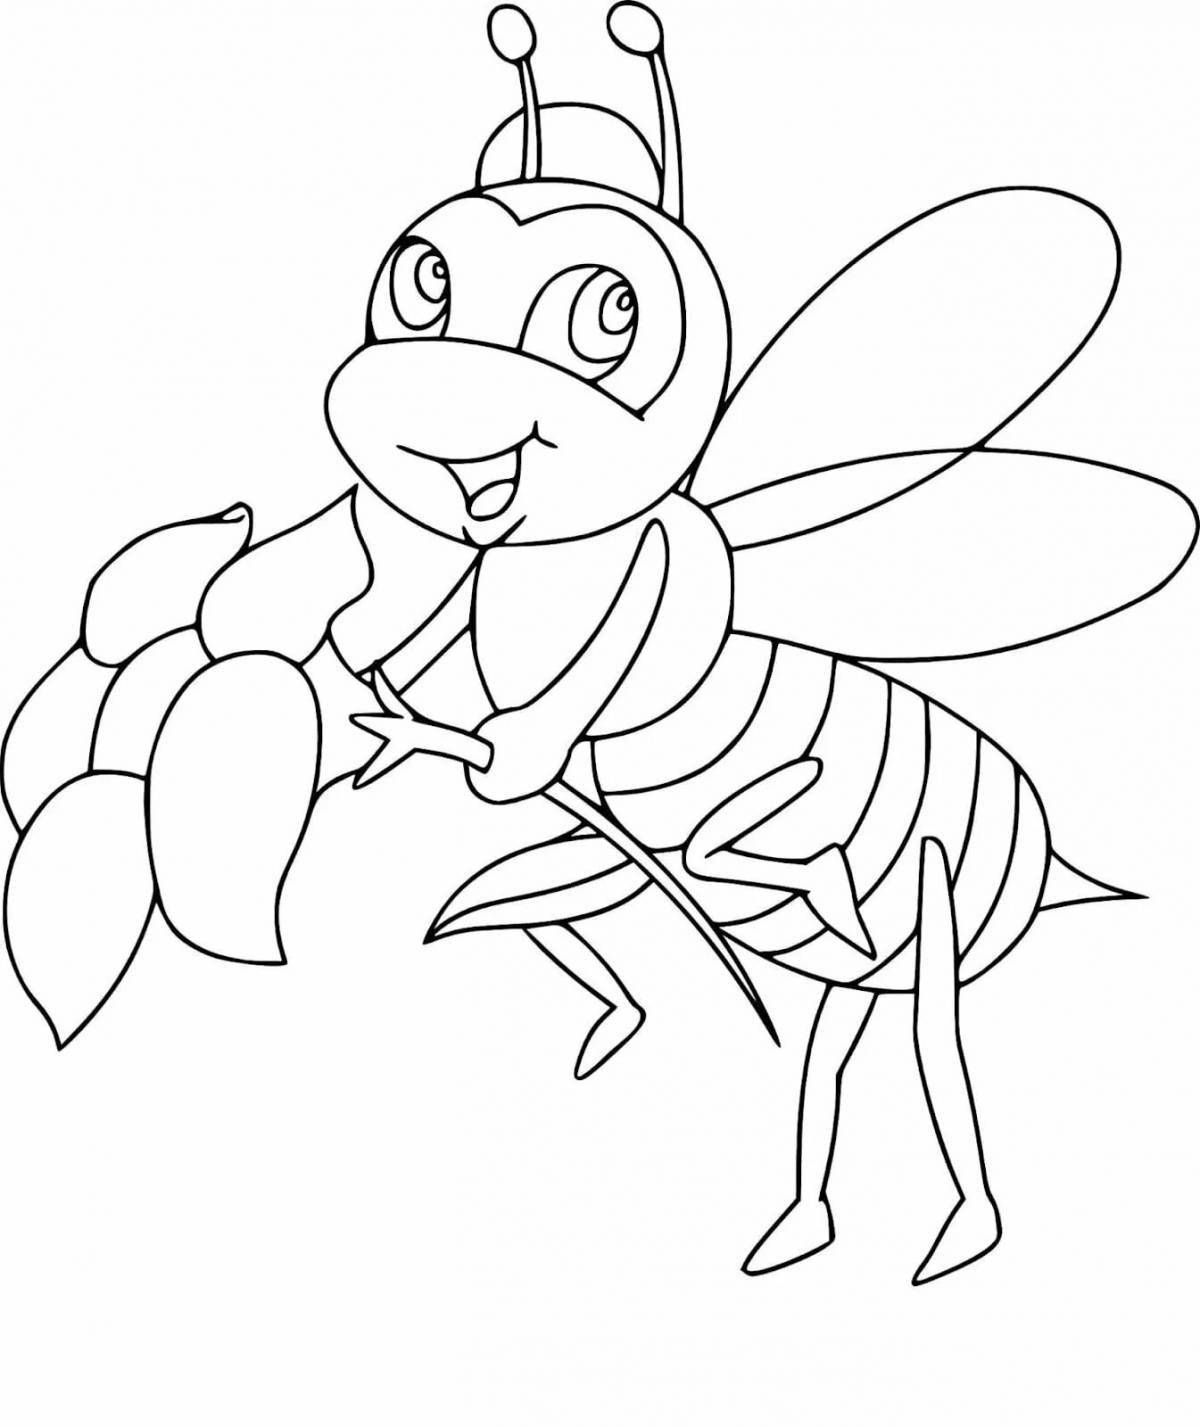 Веселая раскраска пчелы для детей